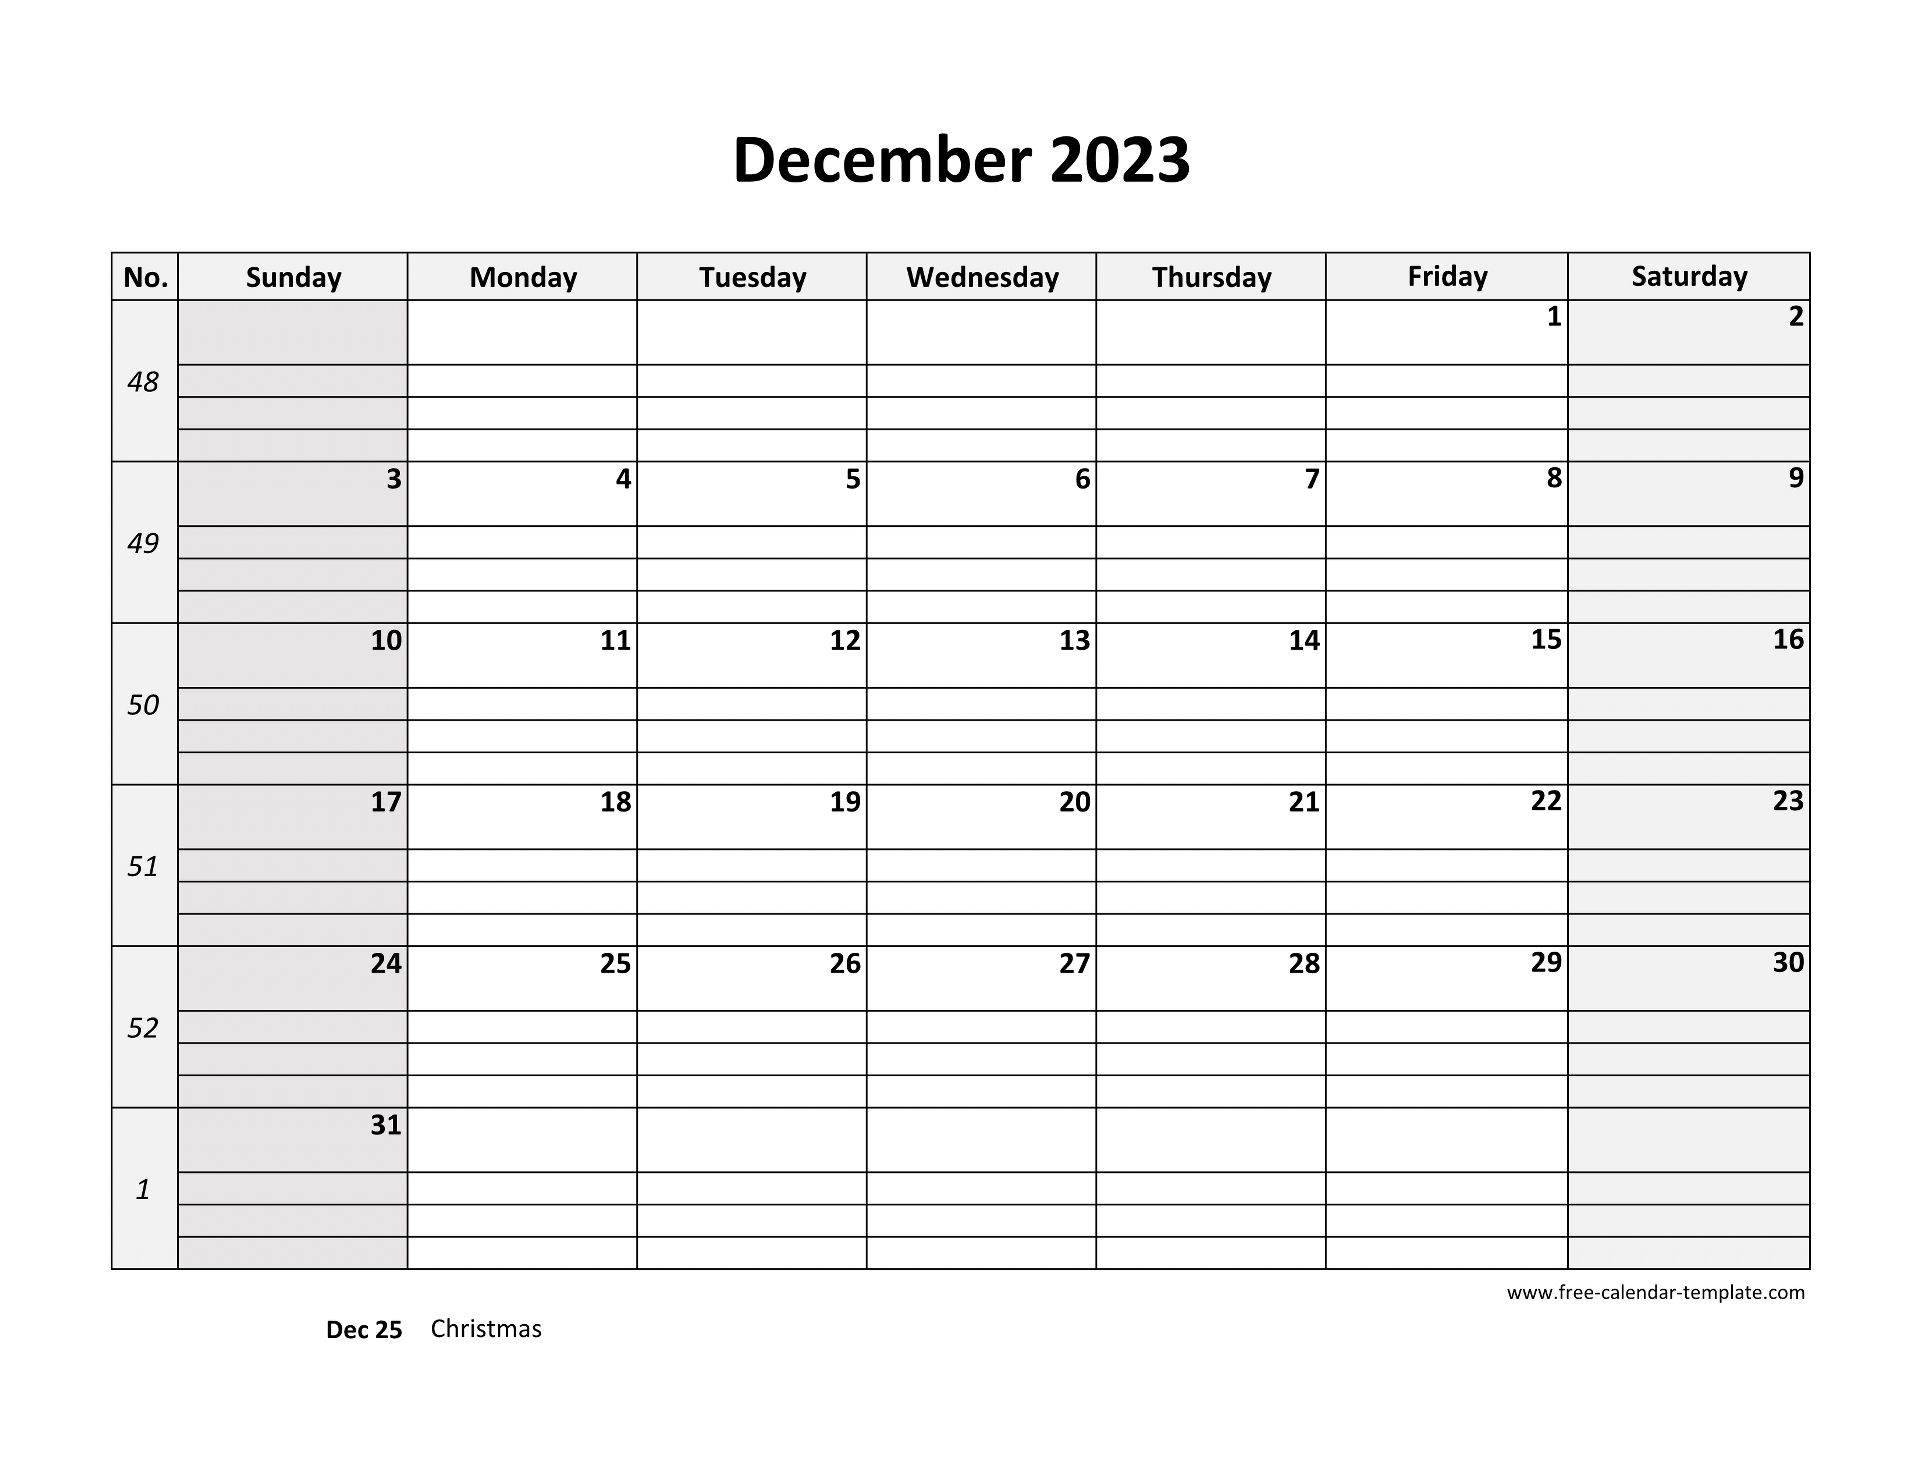 december-2023-free-calendar-tempplate-free-calendar-template